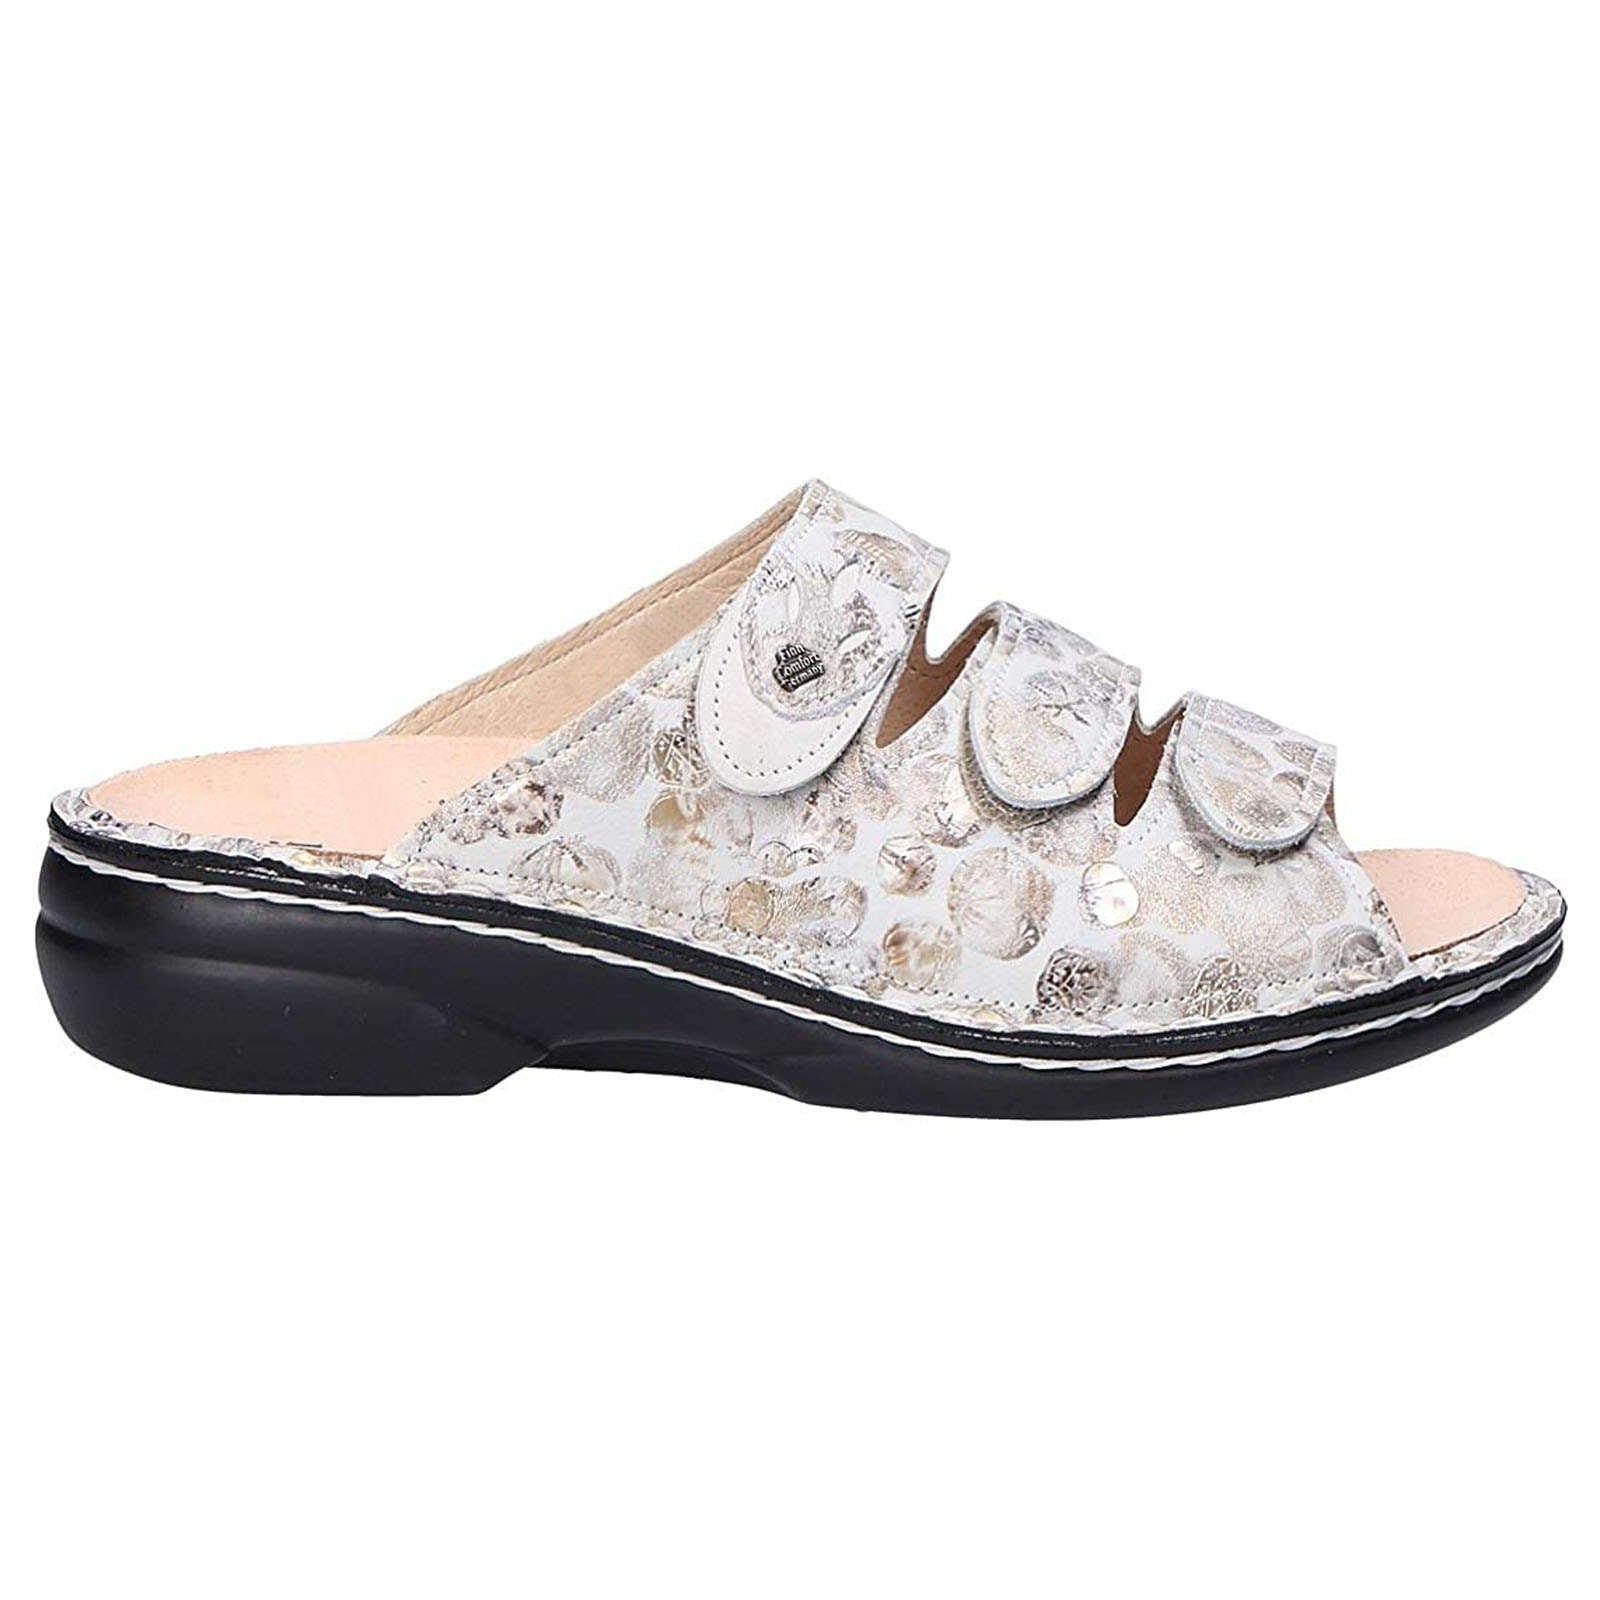 Finn Comfort Kos Leather Women's Slip-On Sandals#color_stone white